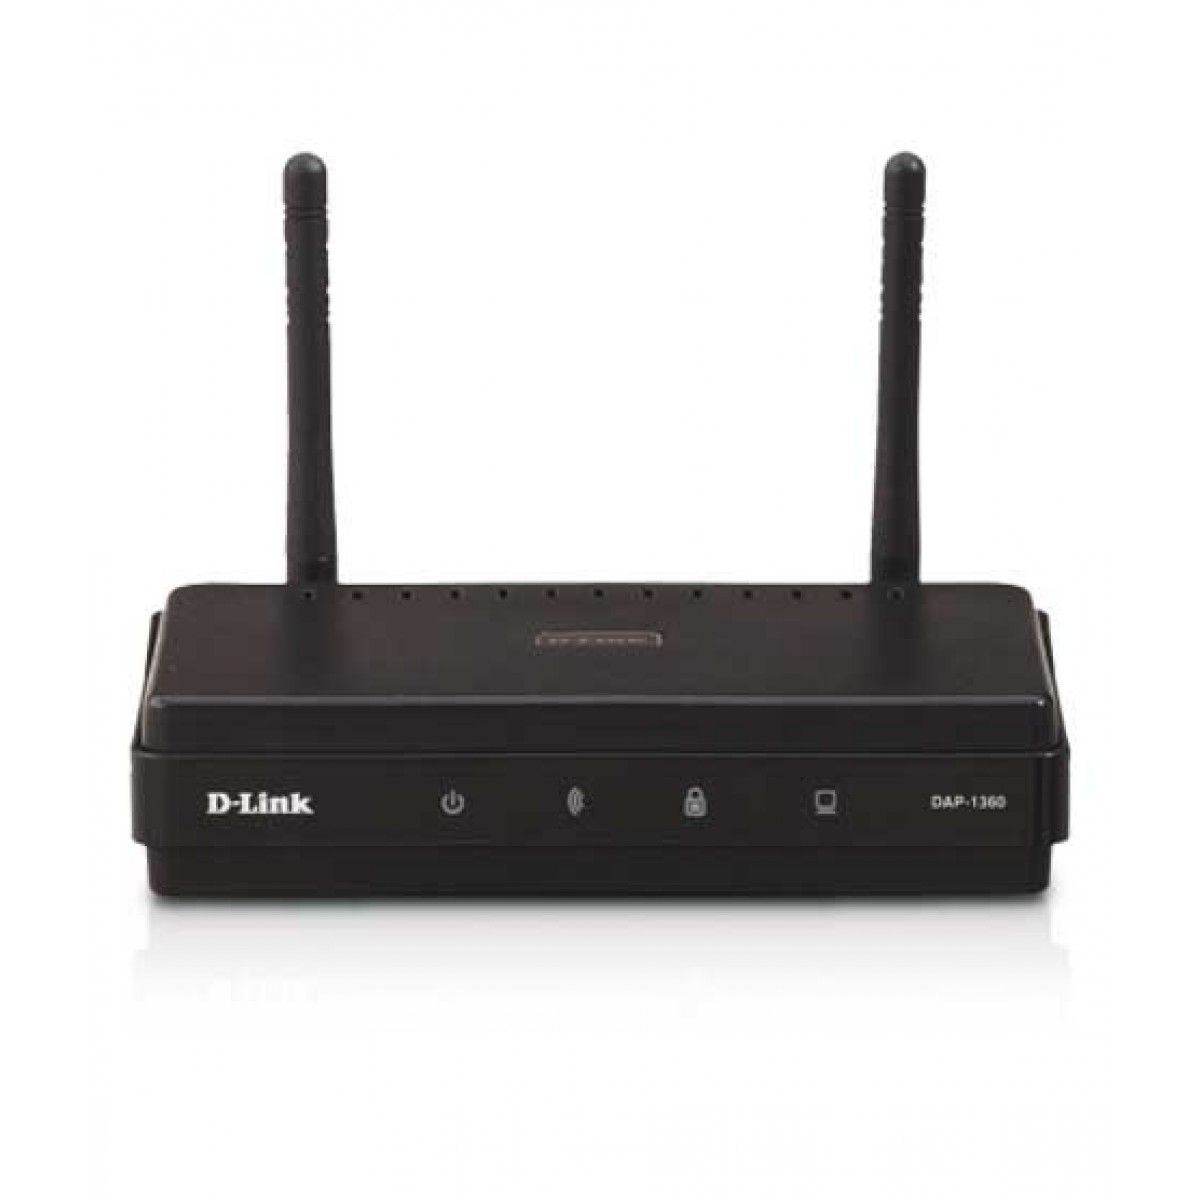 D-Link Wireless N Range Extender (DAP-1360)